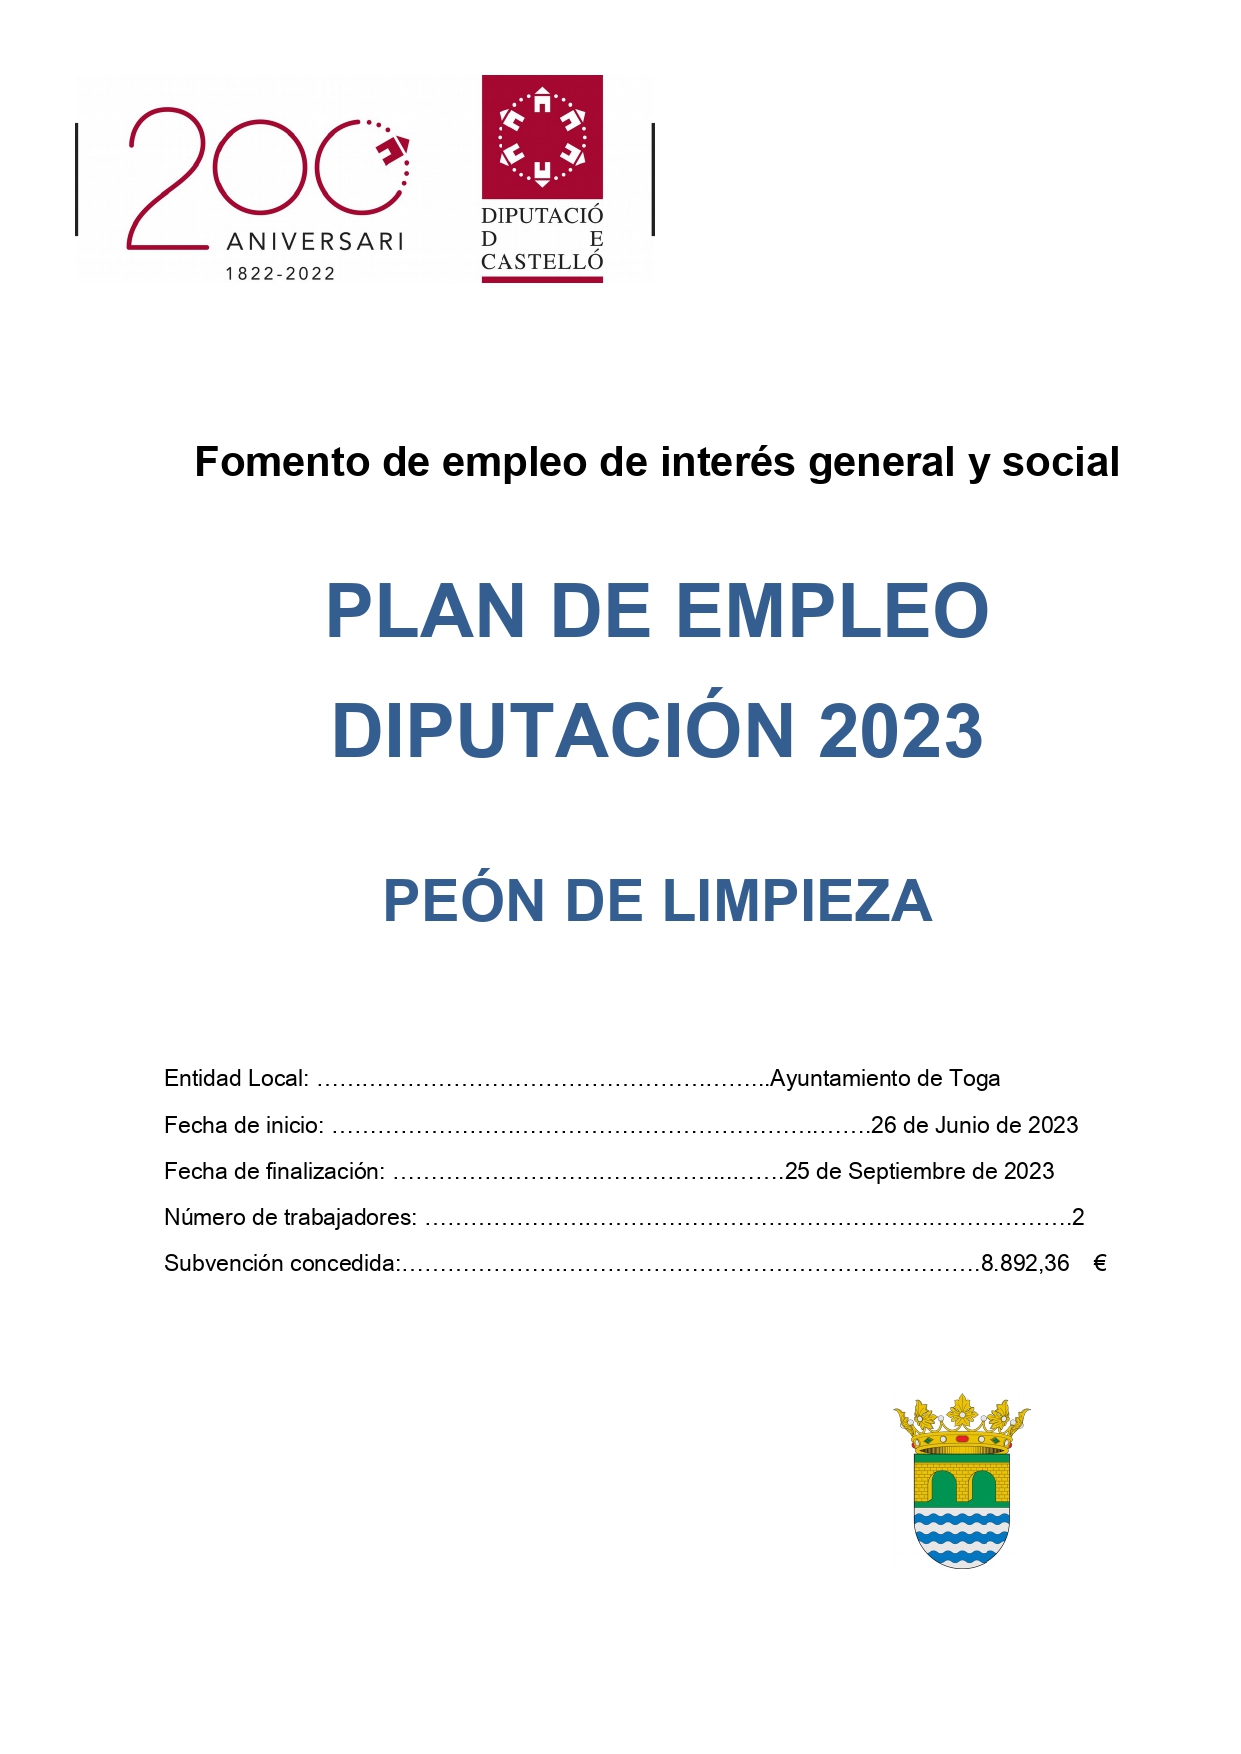 PLAN DE EMPLEO 2023